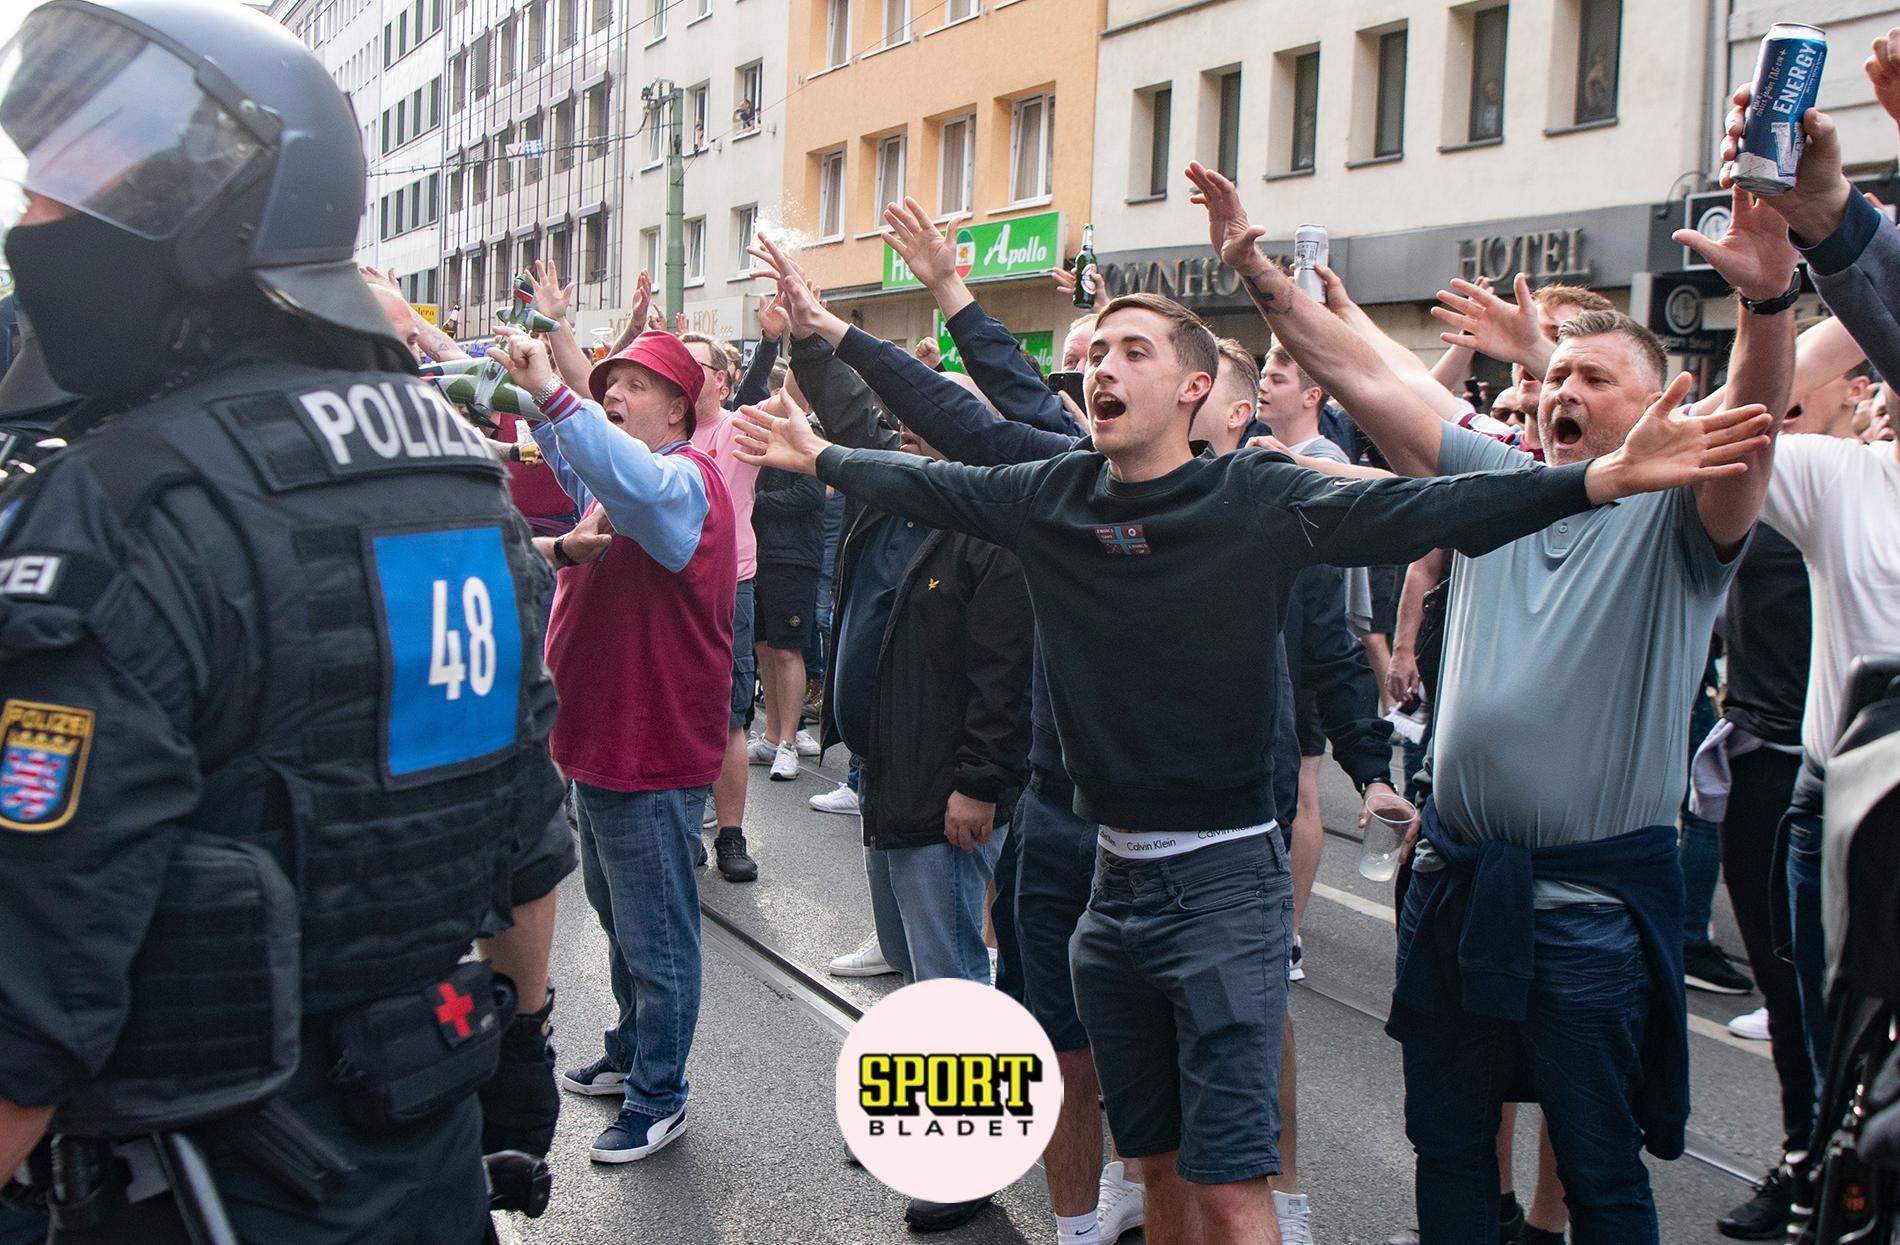 30 gripna efter slagsmål i Frankfurt